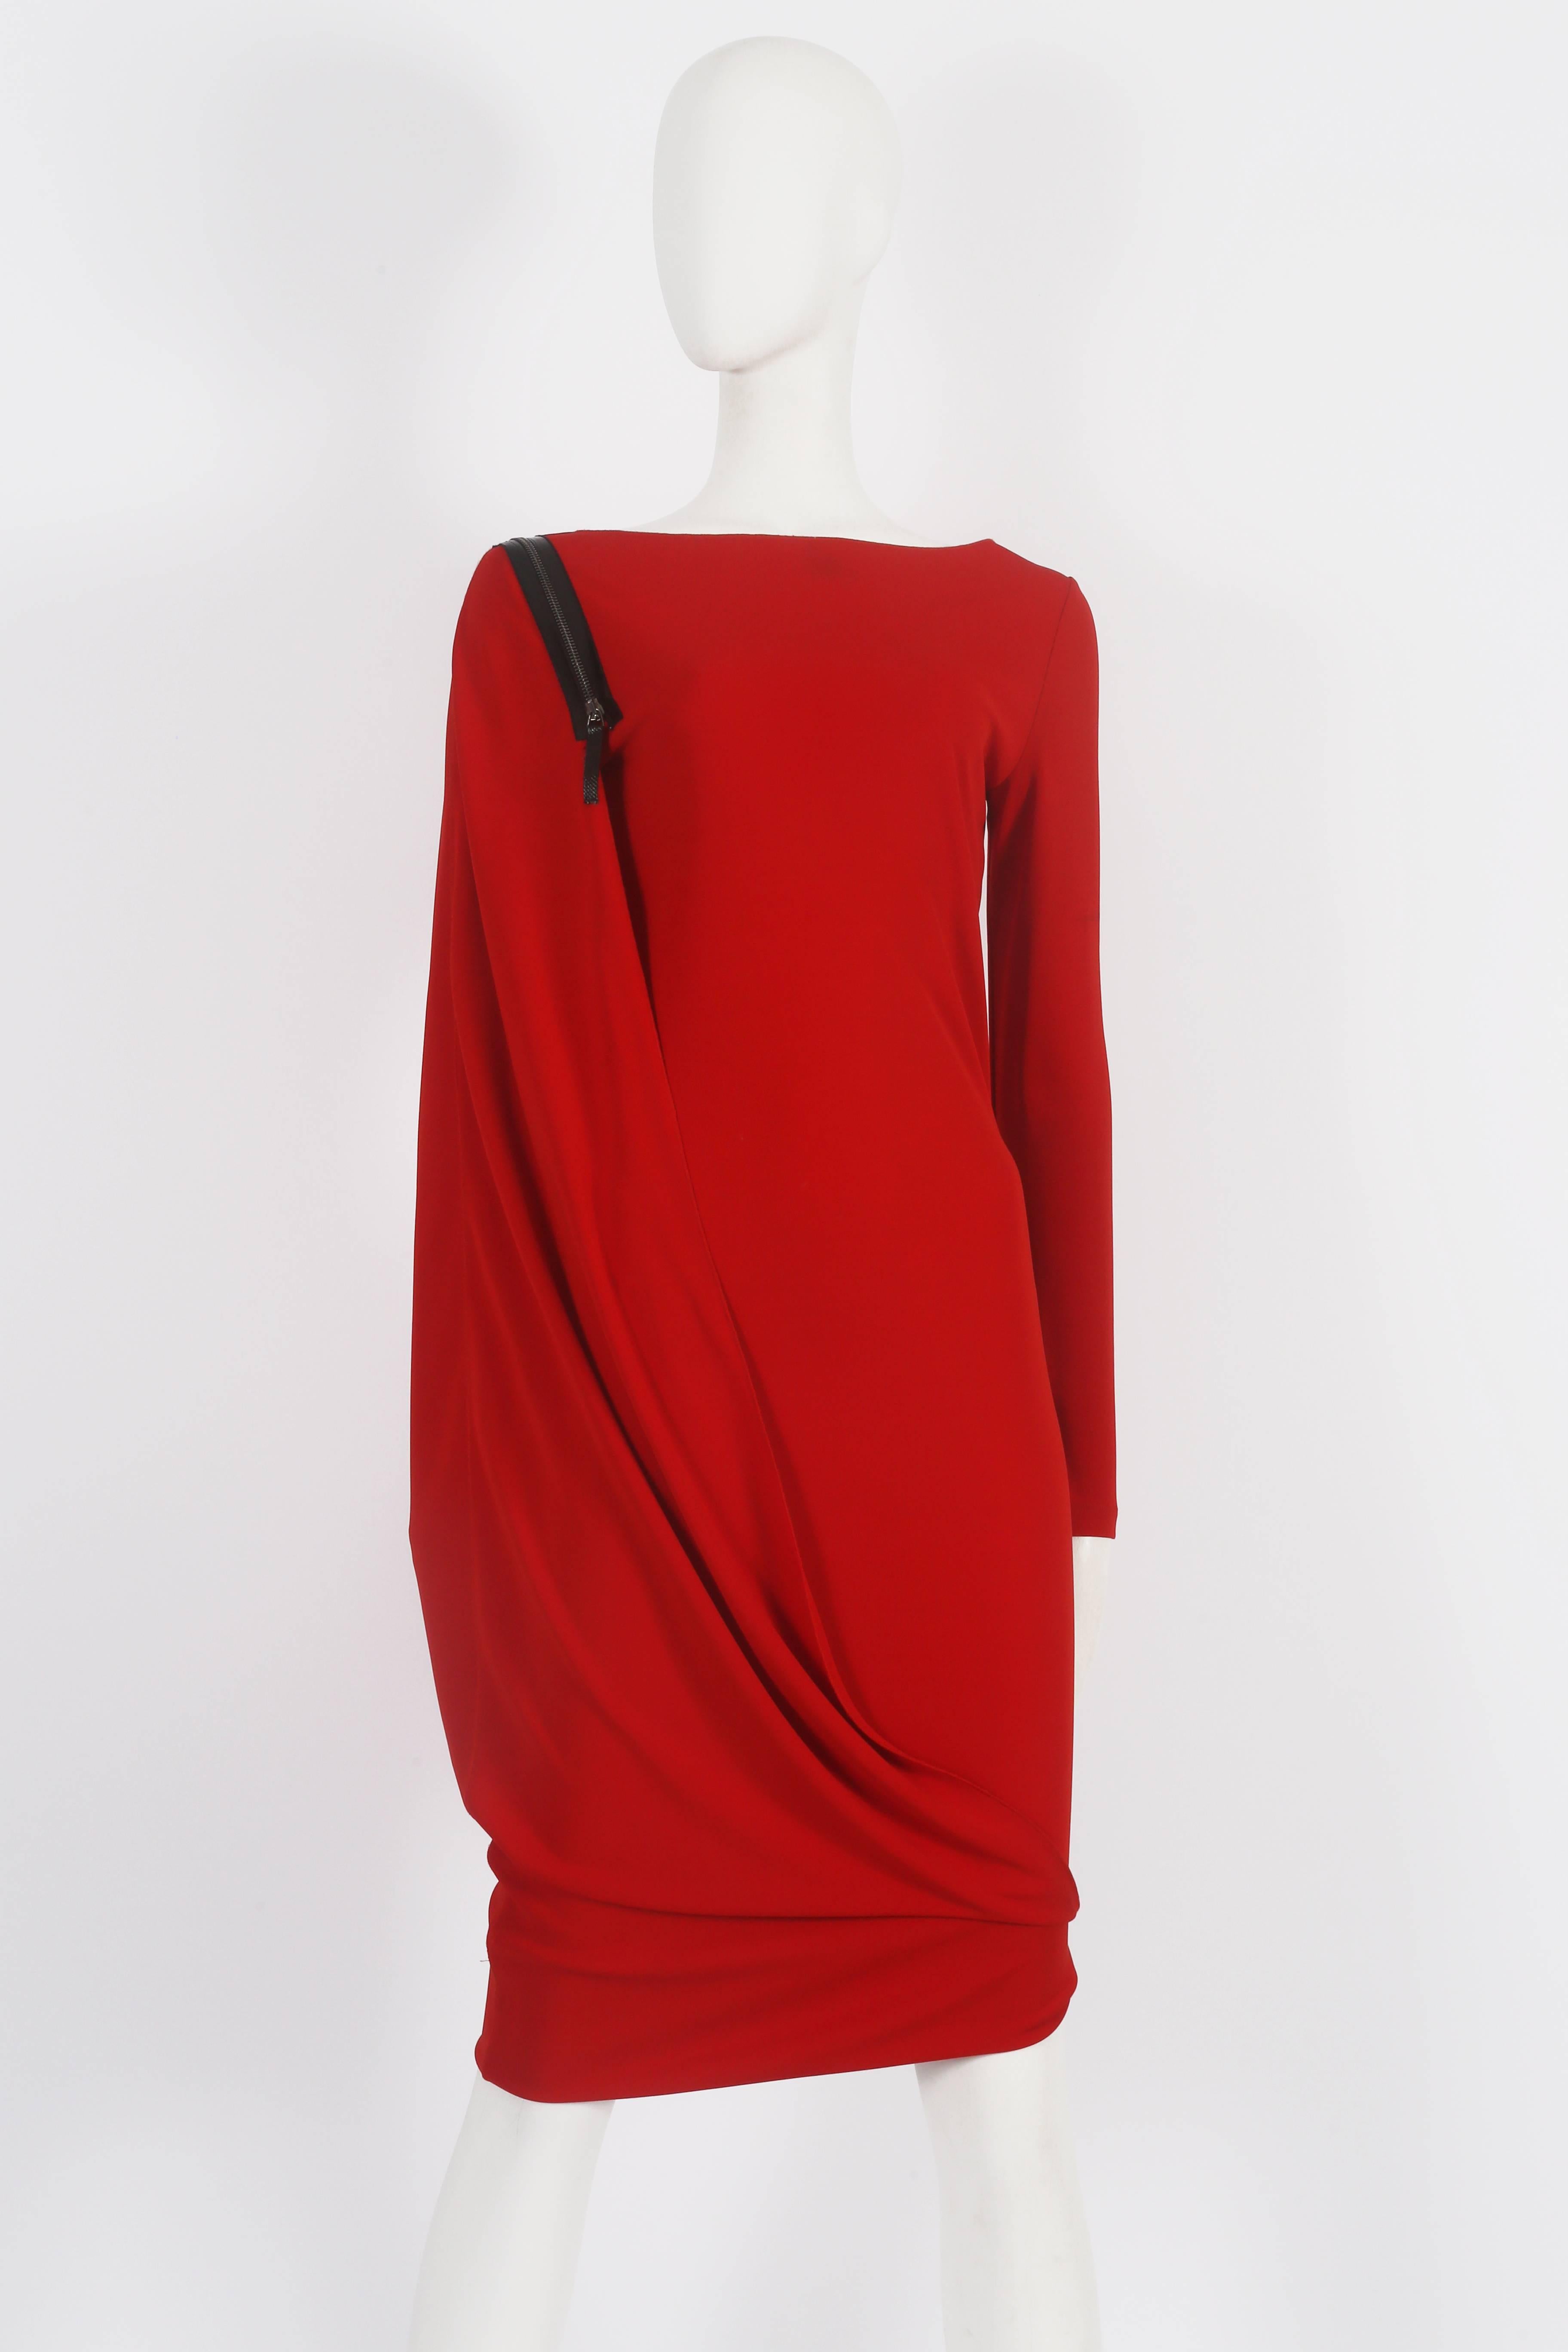 Women's or Men's Jean Paul Gaultier red convertible zip dress, circa 2011